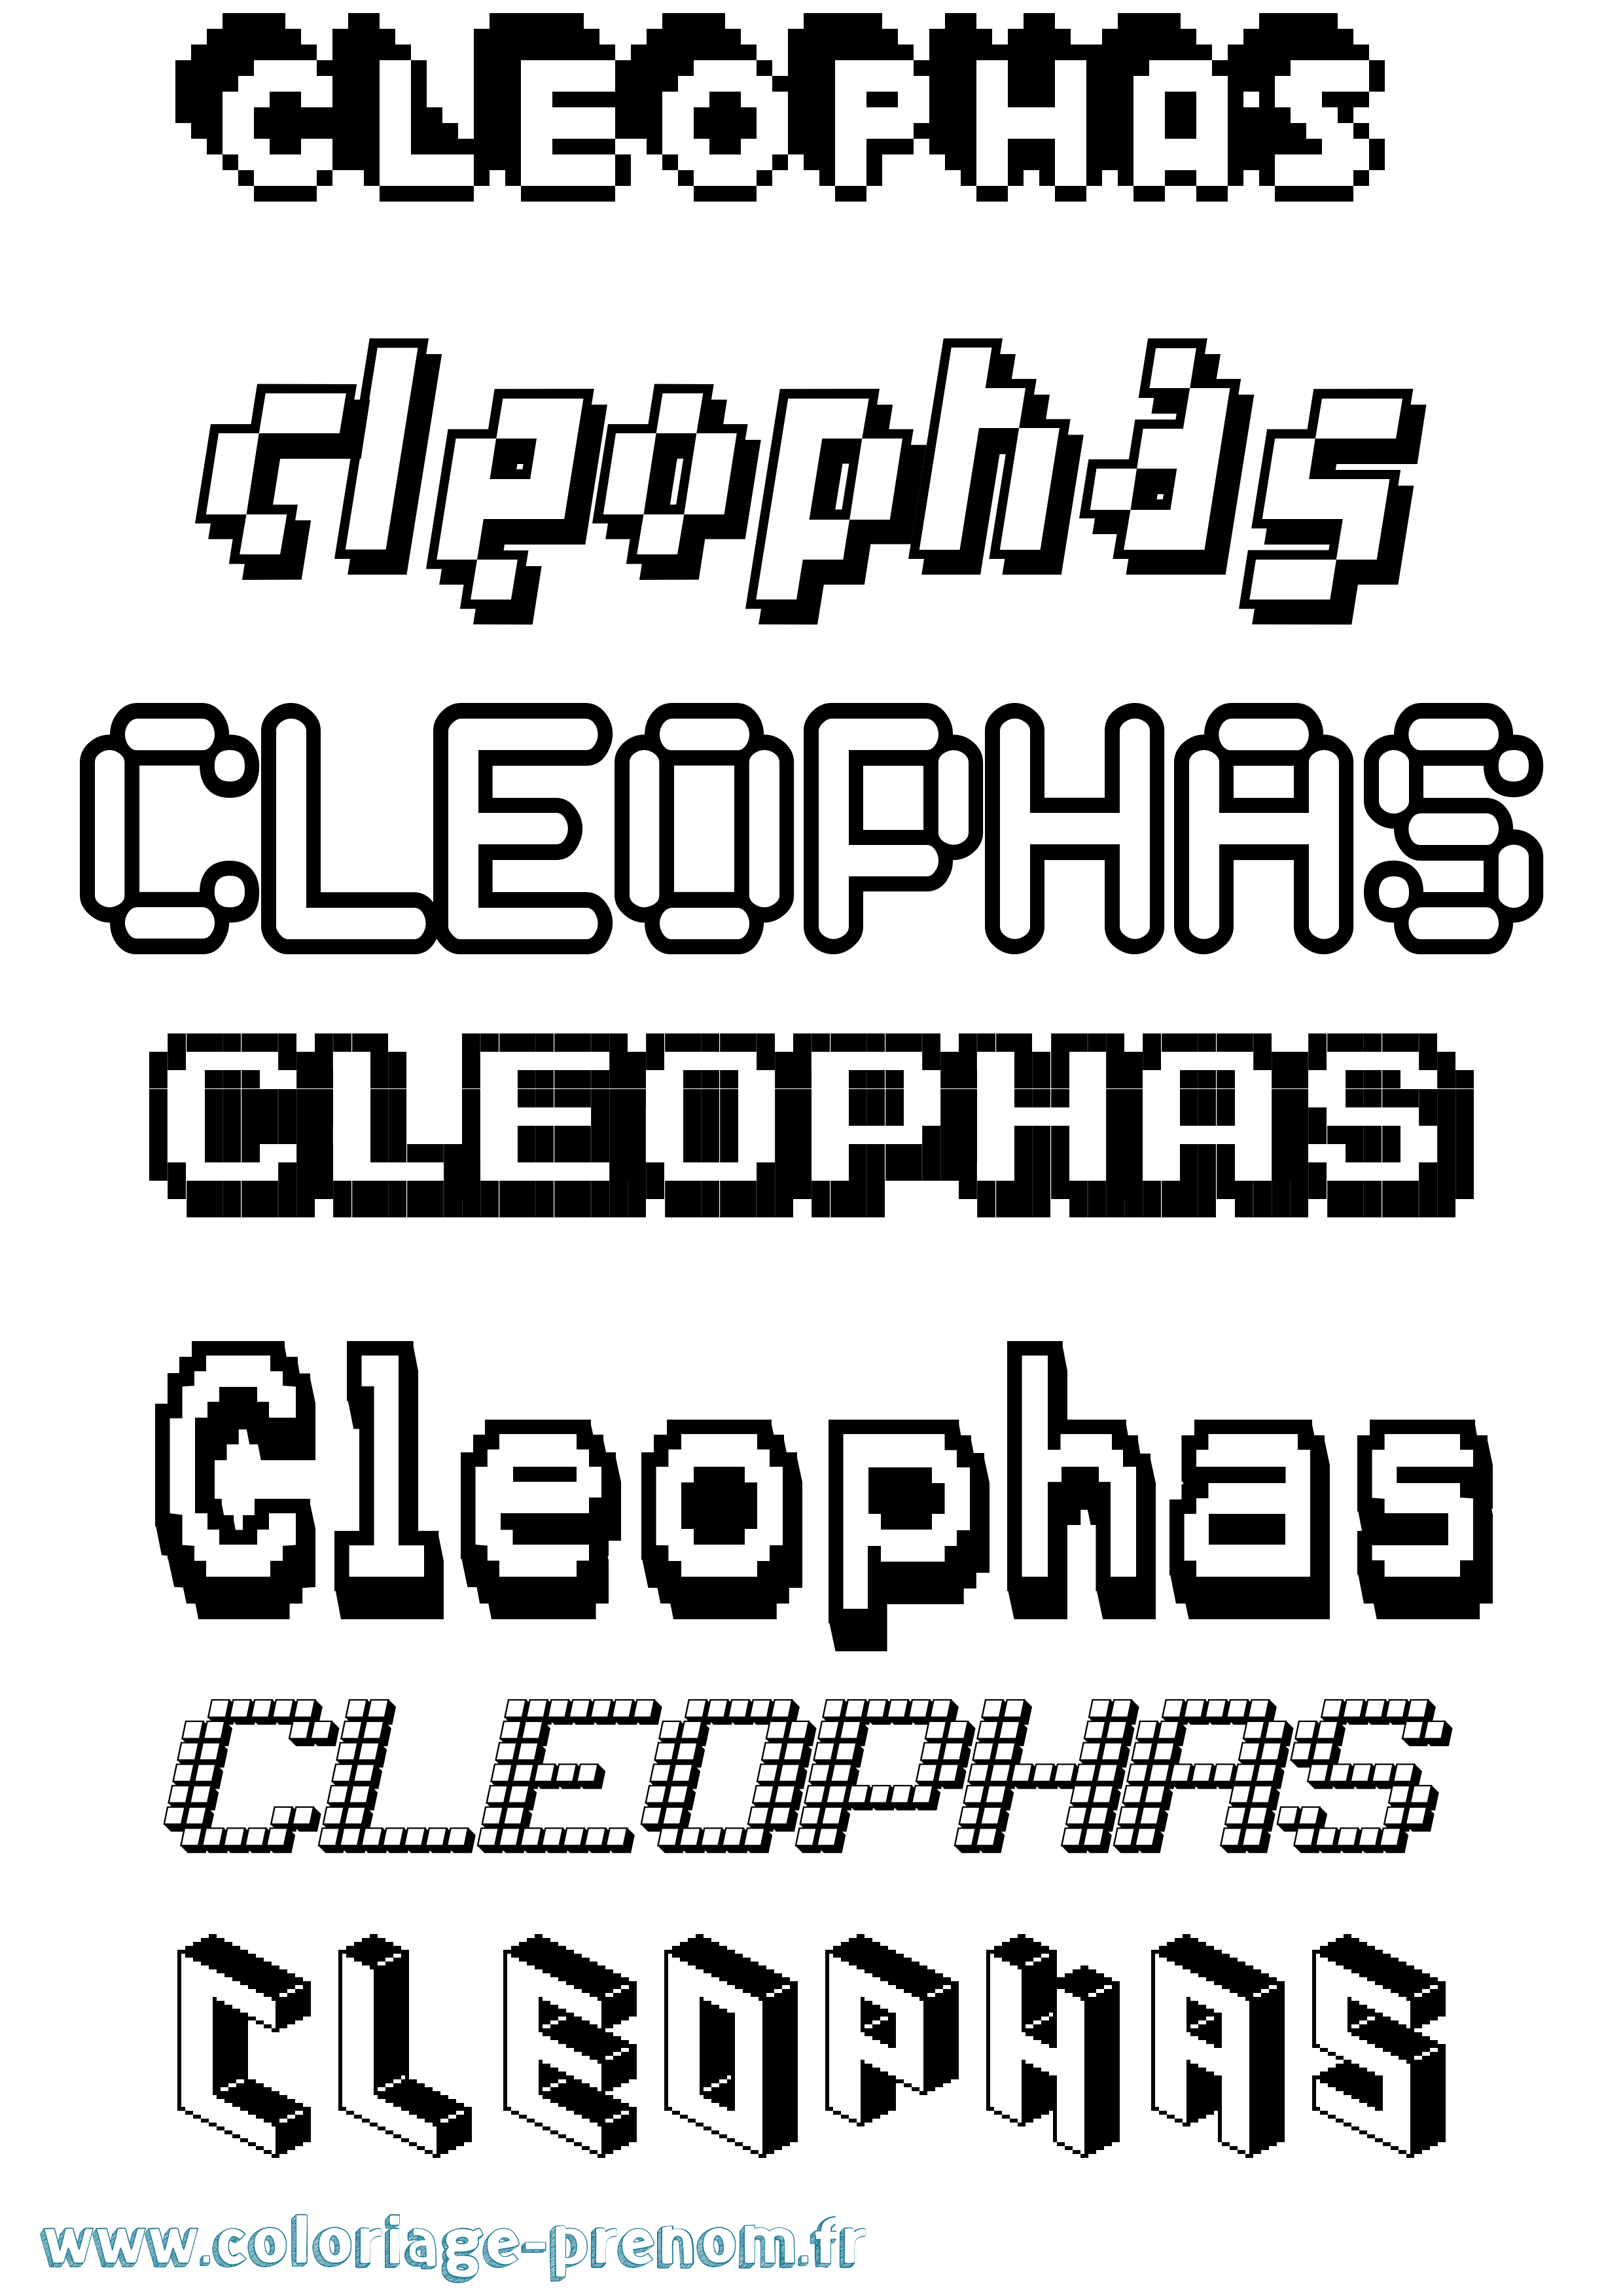 Coloriage prénom Cleophas Pixel